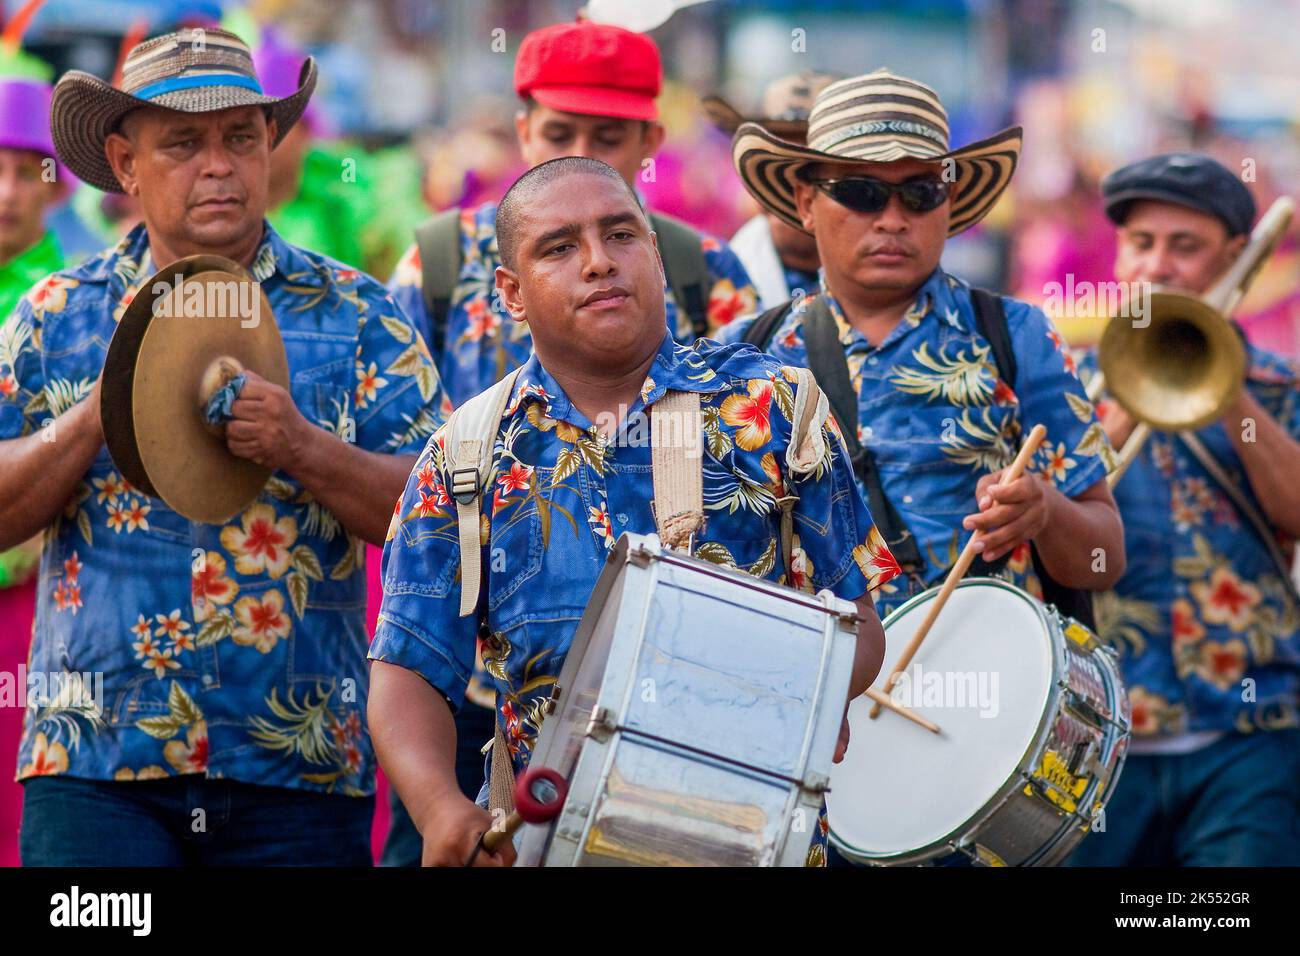 Colombie, Carnaval dans le nord de la ville de Barranquilla est le plus important dans le pays et célèbre dans le monde. Les nombreuses défilés et la fête de la musique Banque D'Images